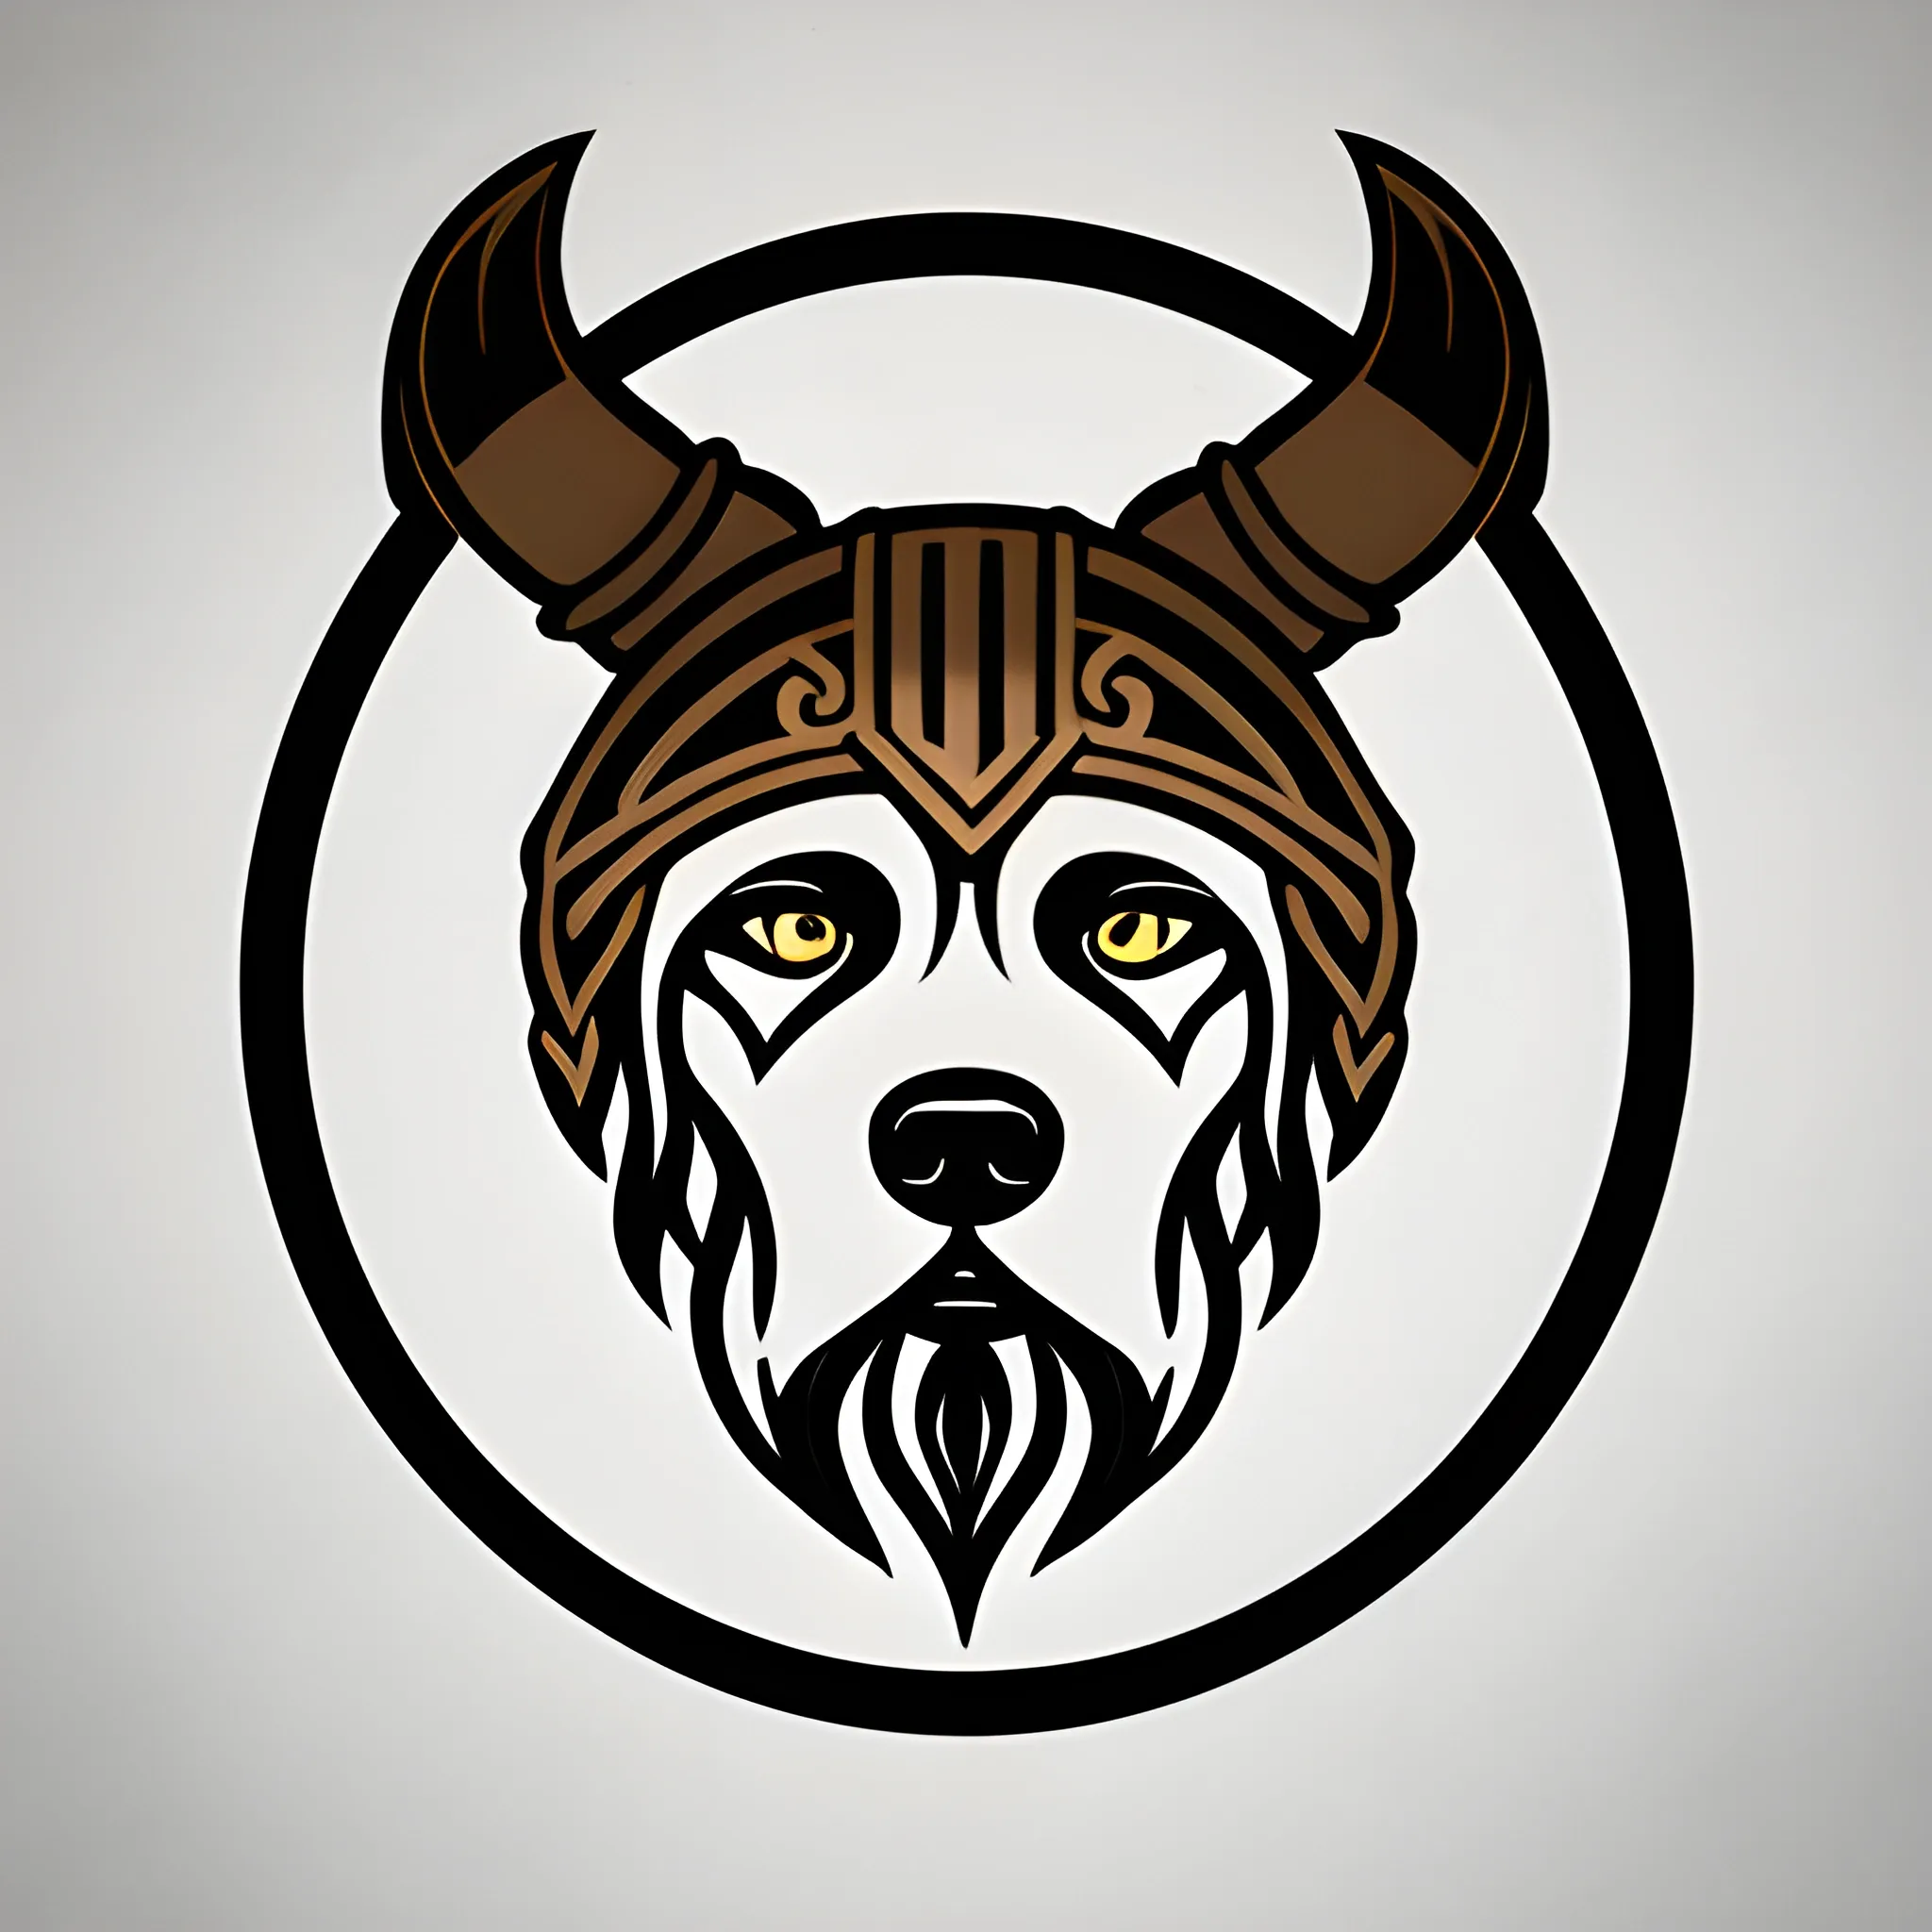 Viking dog logo, no text